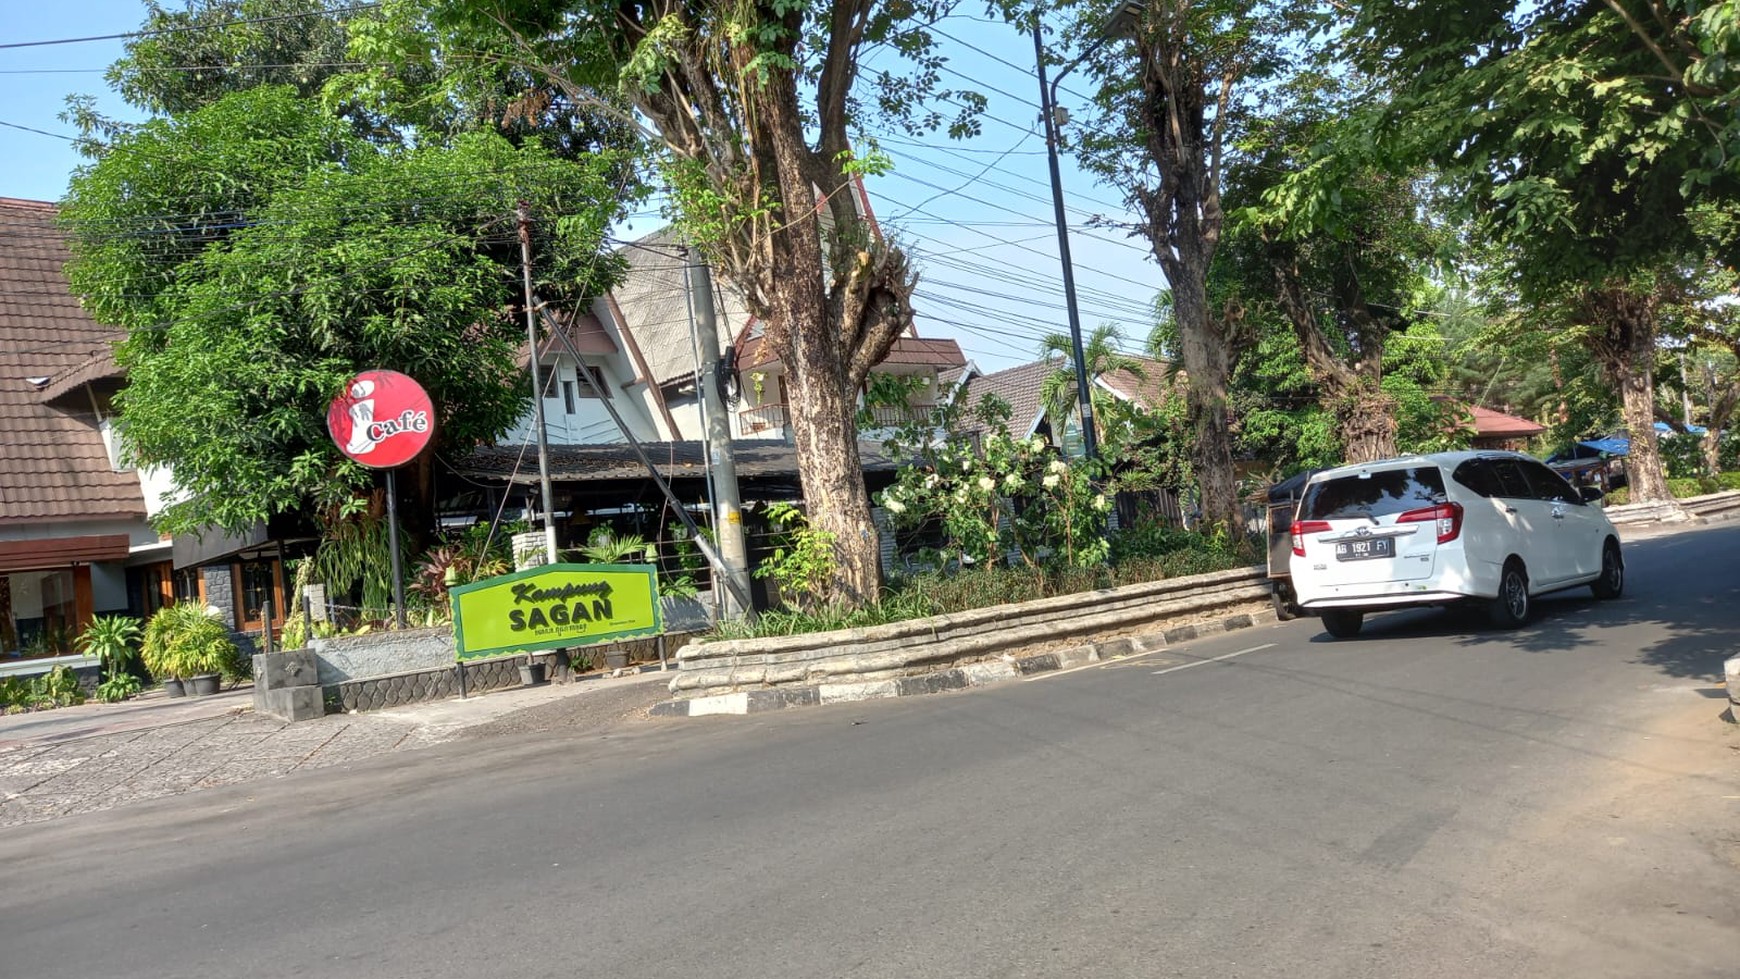 Dijual... Tanah Strategis Di Sagan Gondokusuman, Kota Yogyakarta